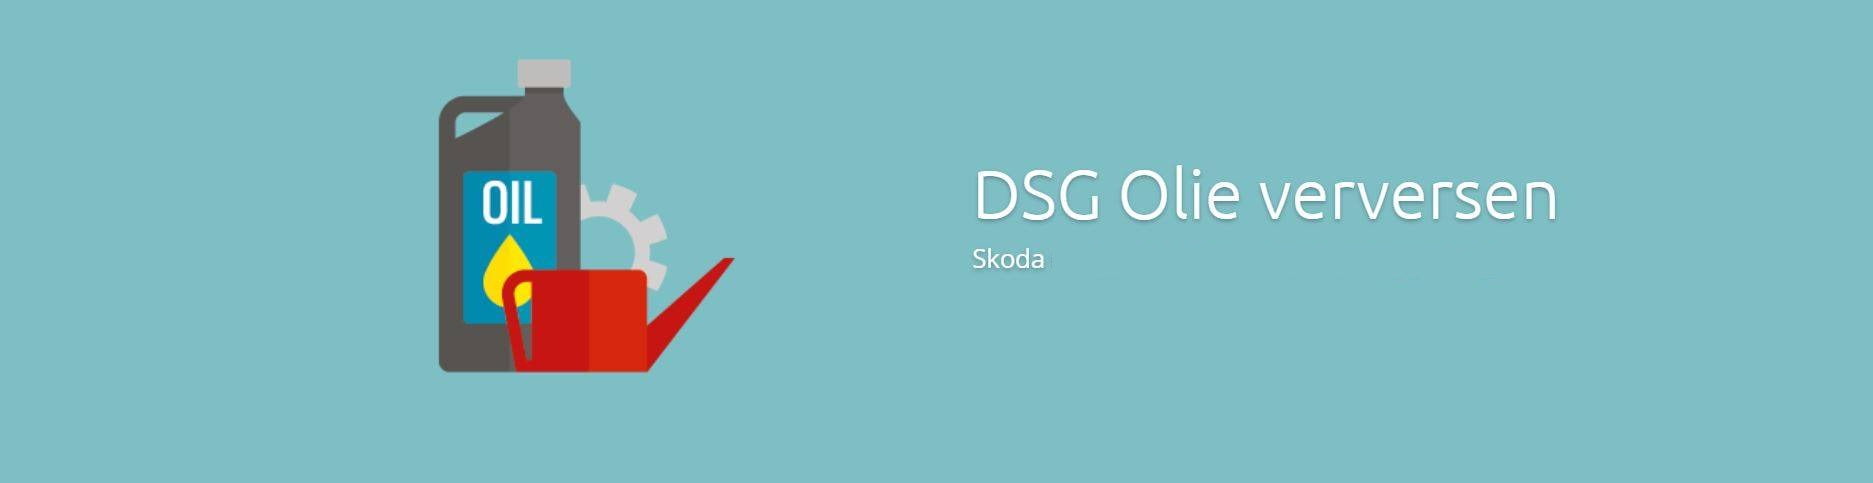 Skoda DSG Olie Verversen €179 DSG Skoda Olie Vervangen bij schakel klachten DSG oliewissel Skoda is bij DSG Service Dealer erg gunstig €179